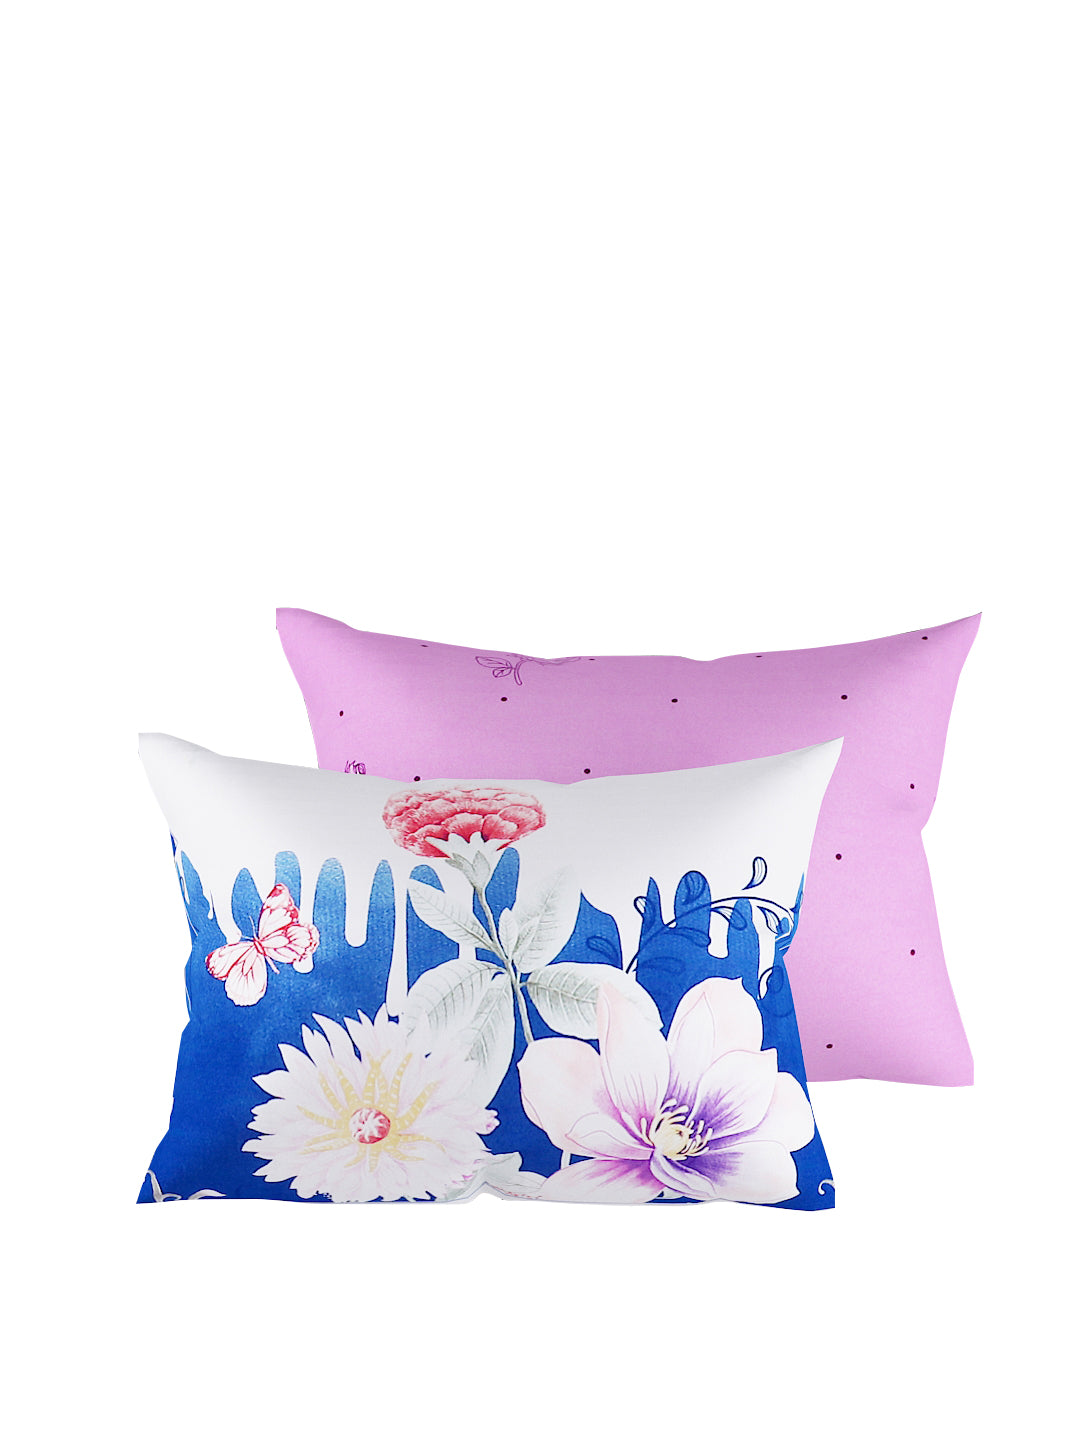 Lavender & Blue 4-Pcs Printed Double Queen Bedding Set